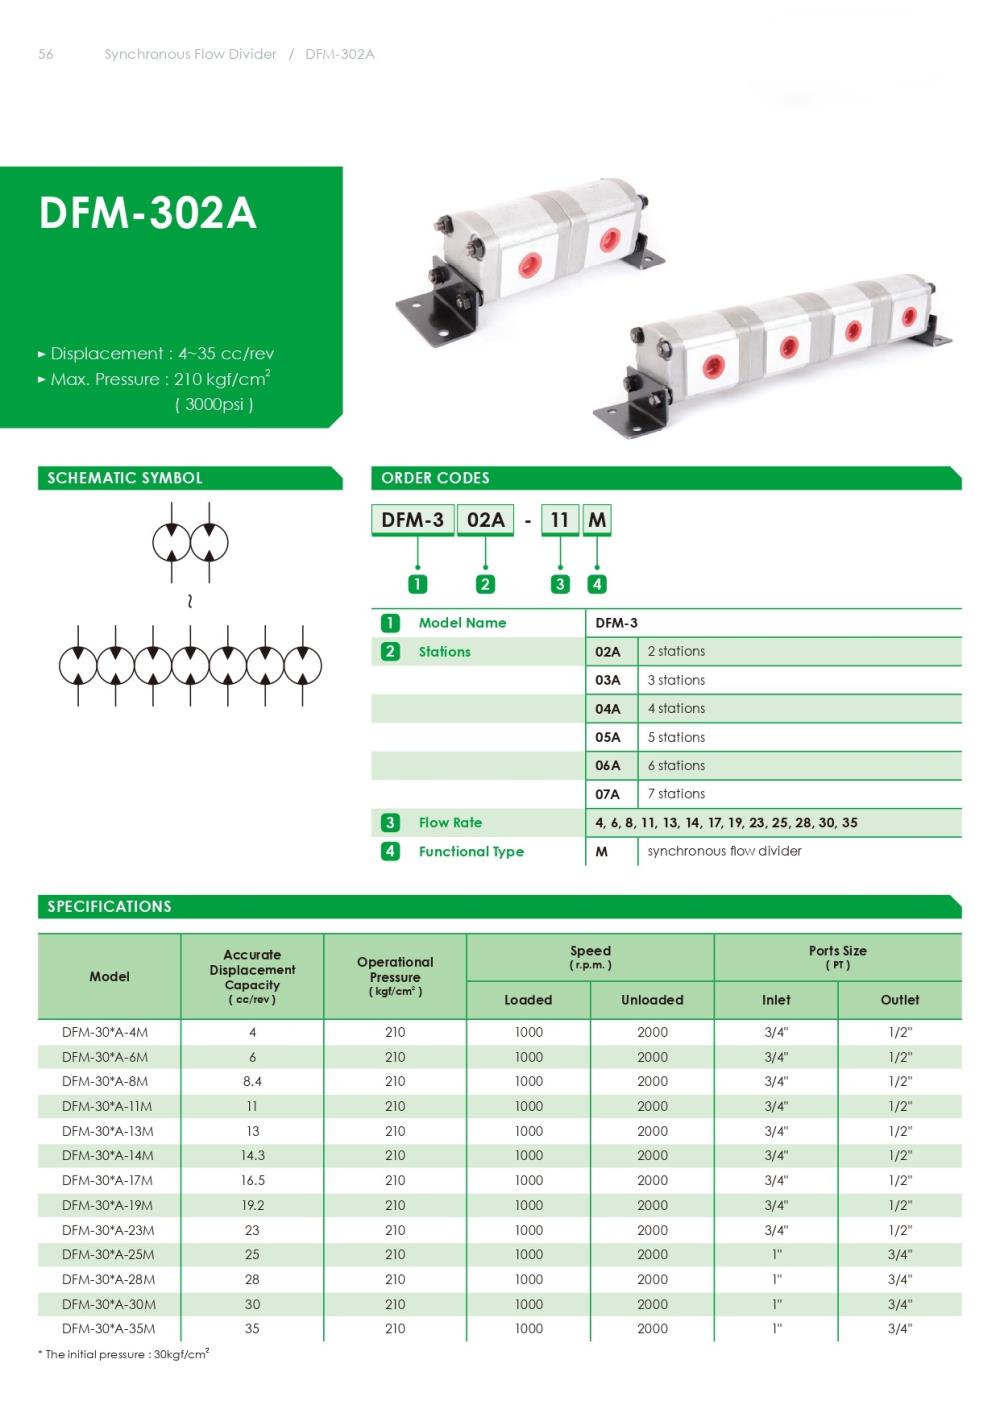 Synchronous Flow Divider DFM-302A-M